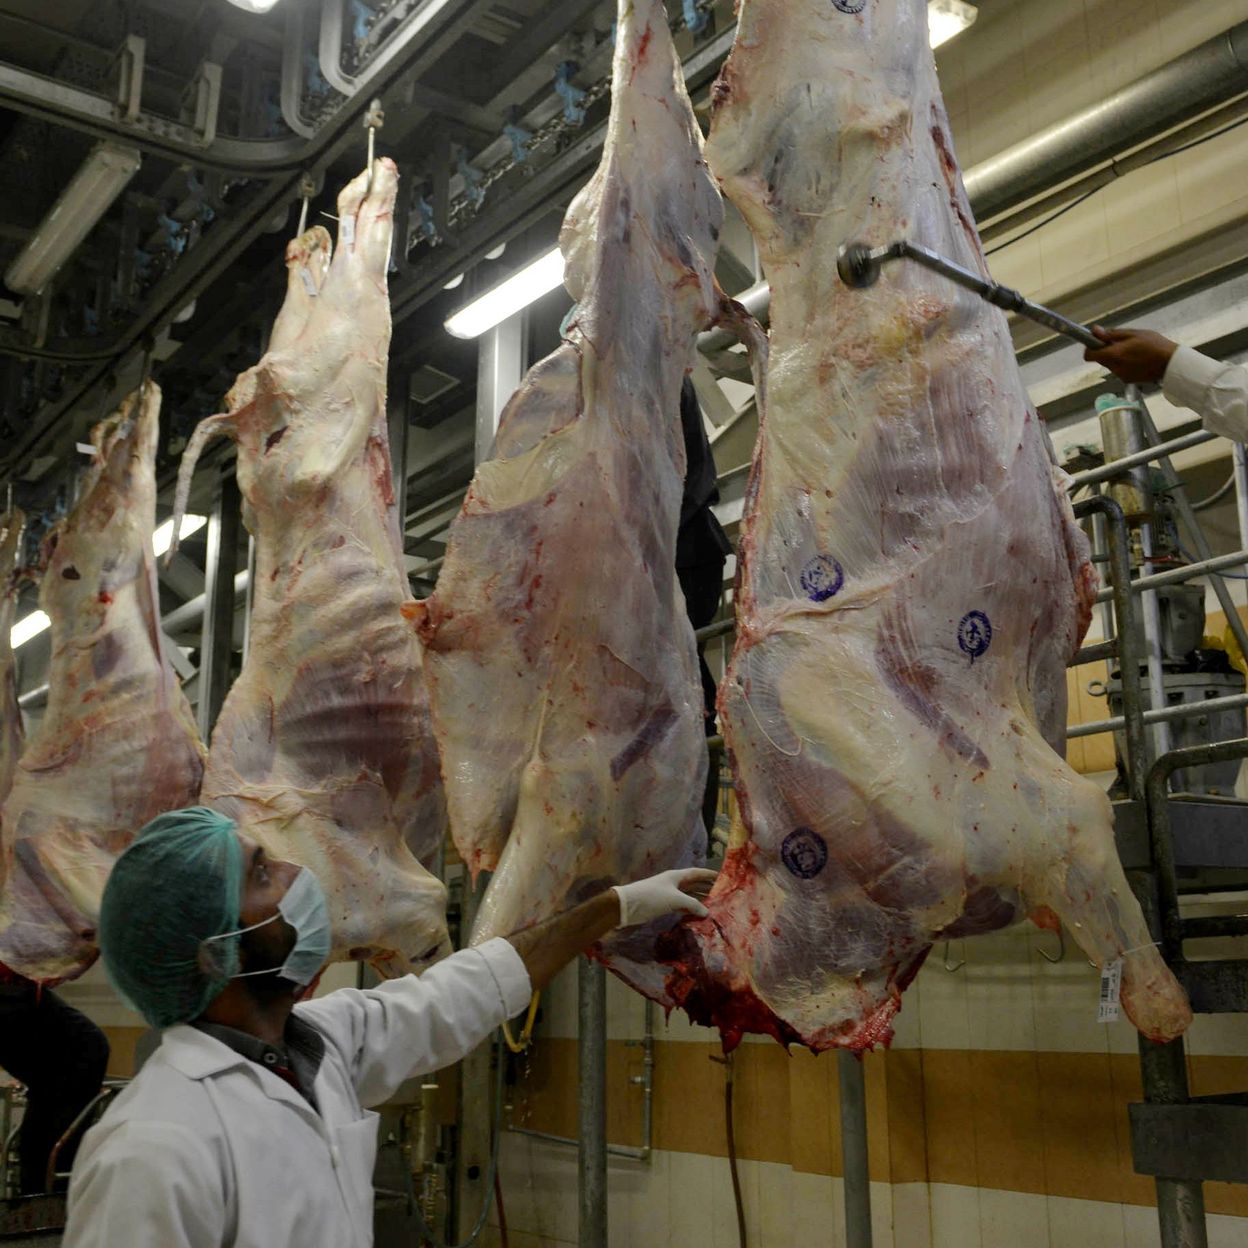 Pourquoi la viande halal est moins chère ?